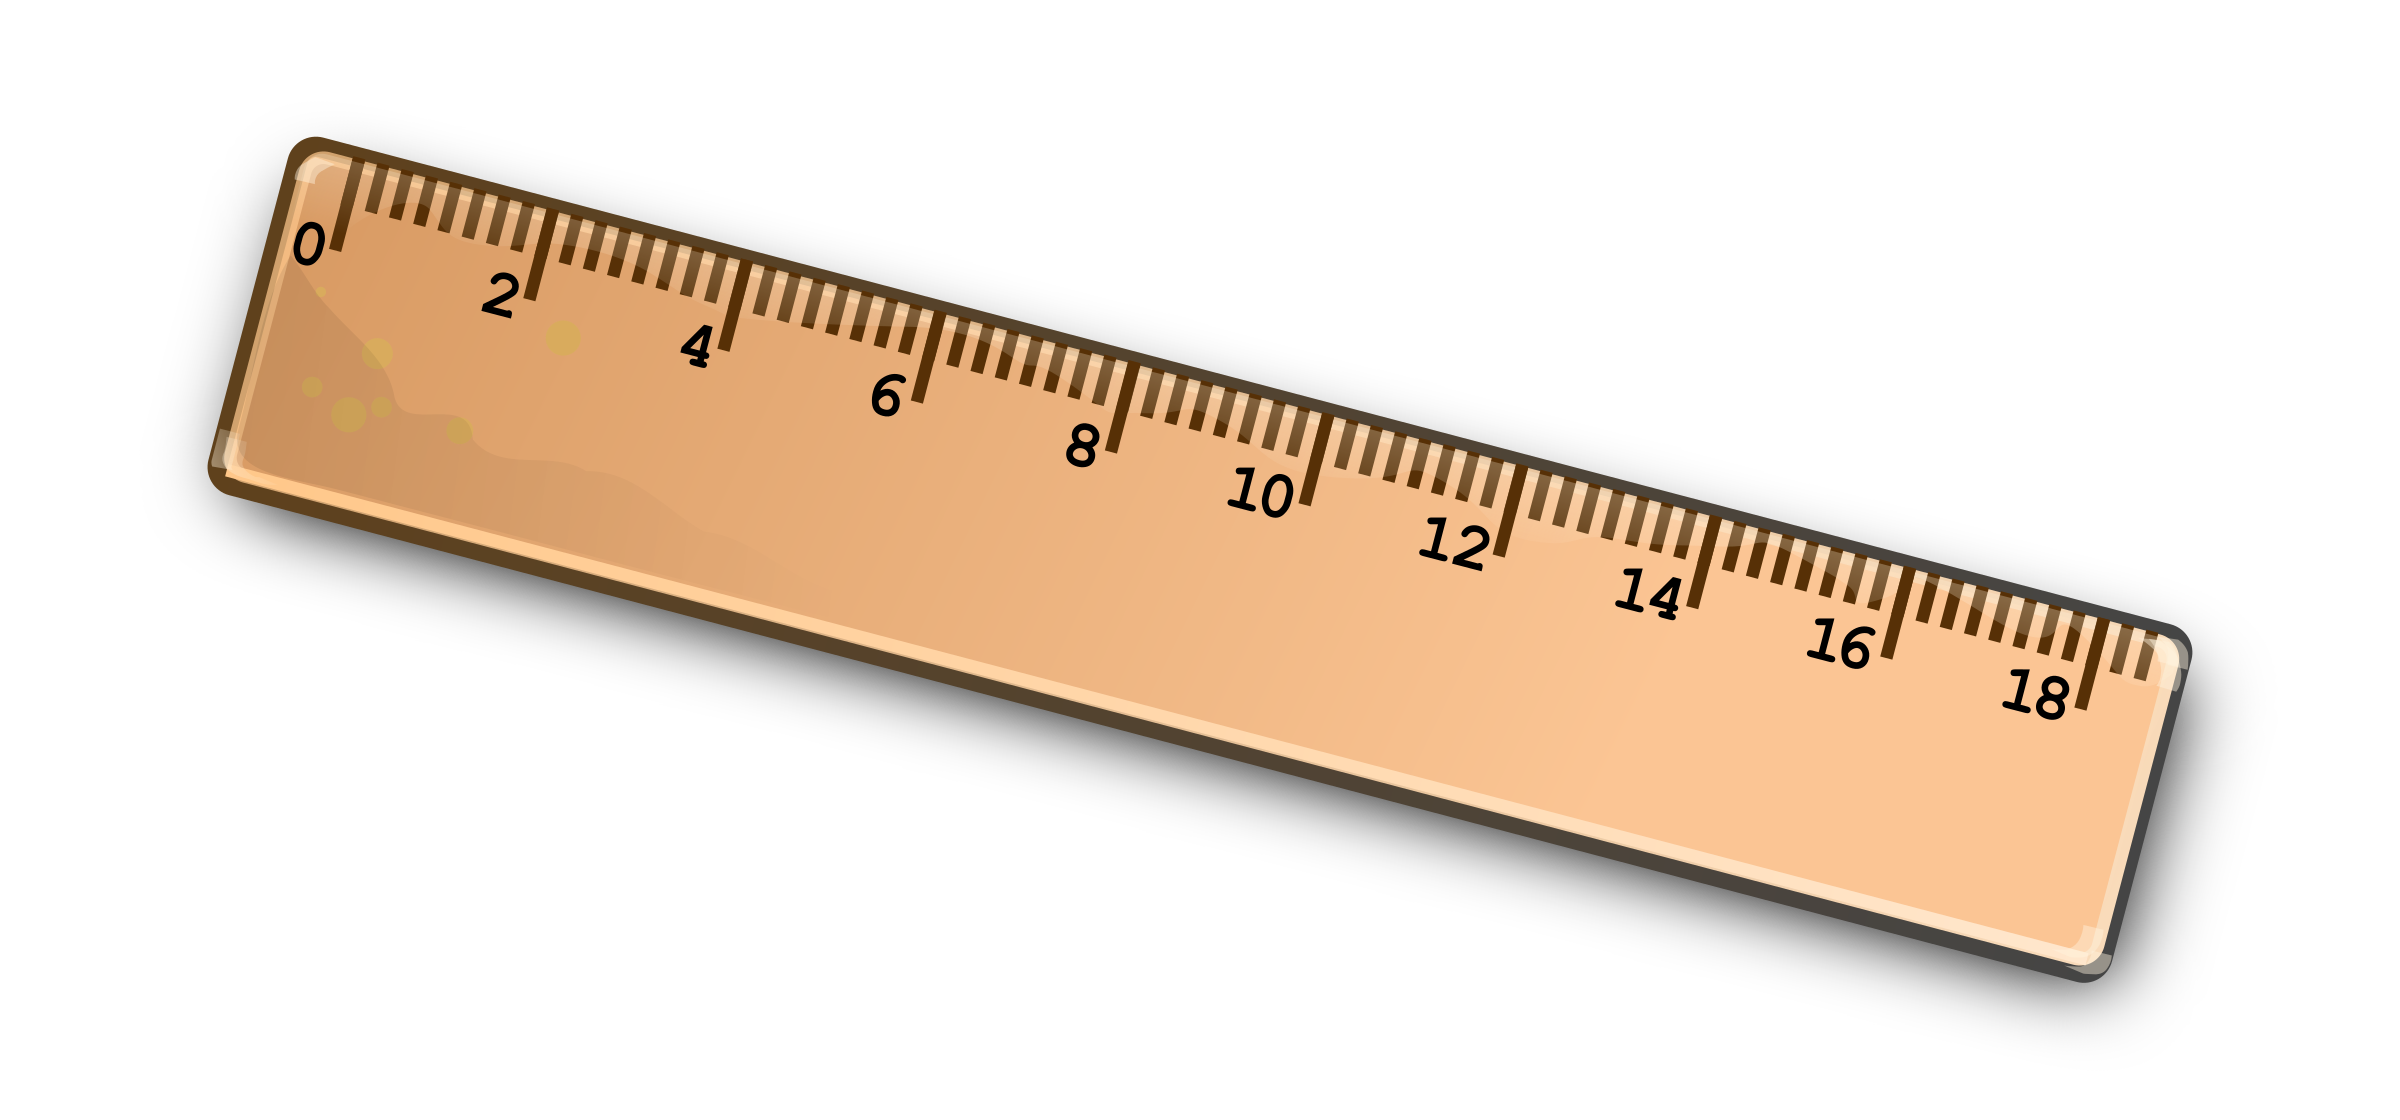 wooden ruler png